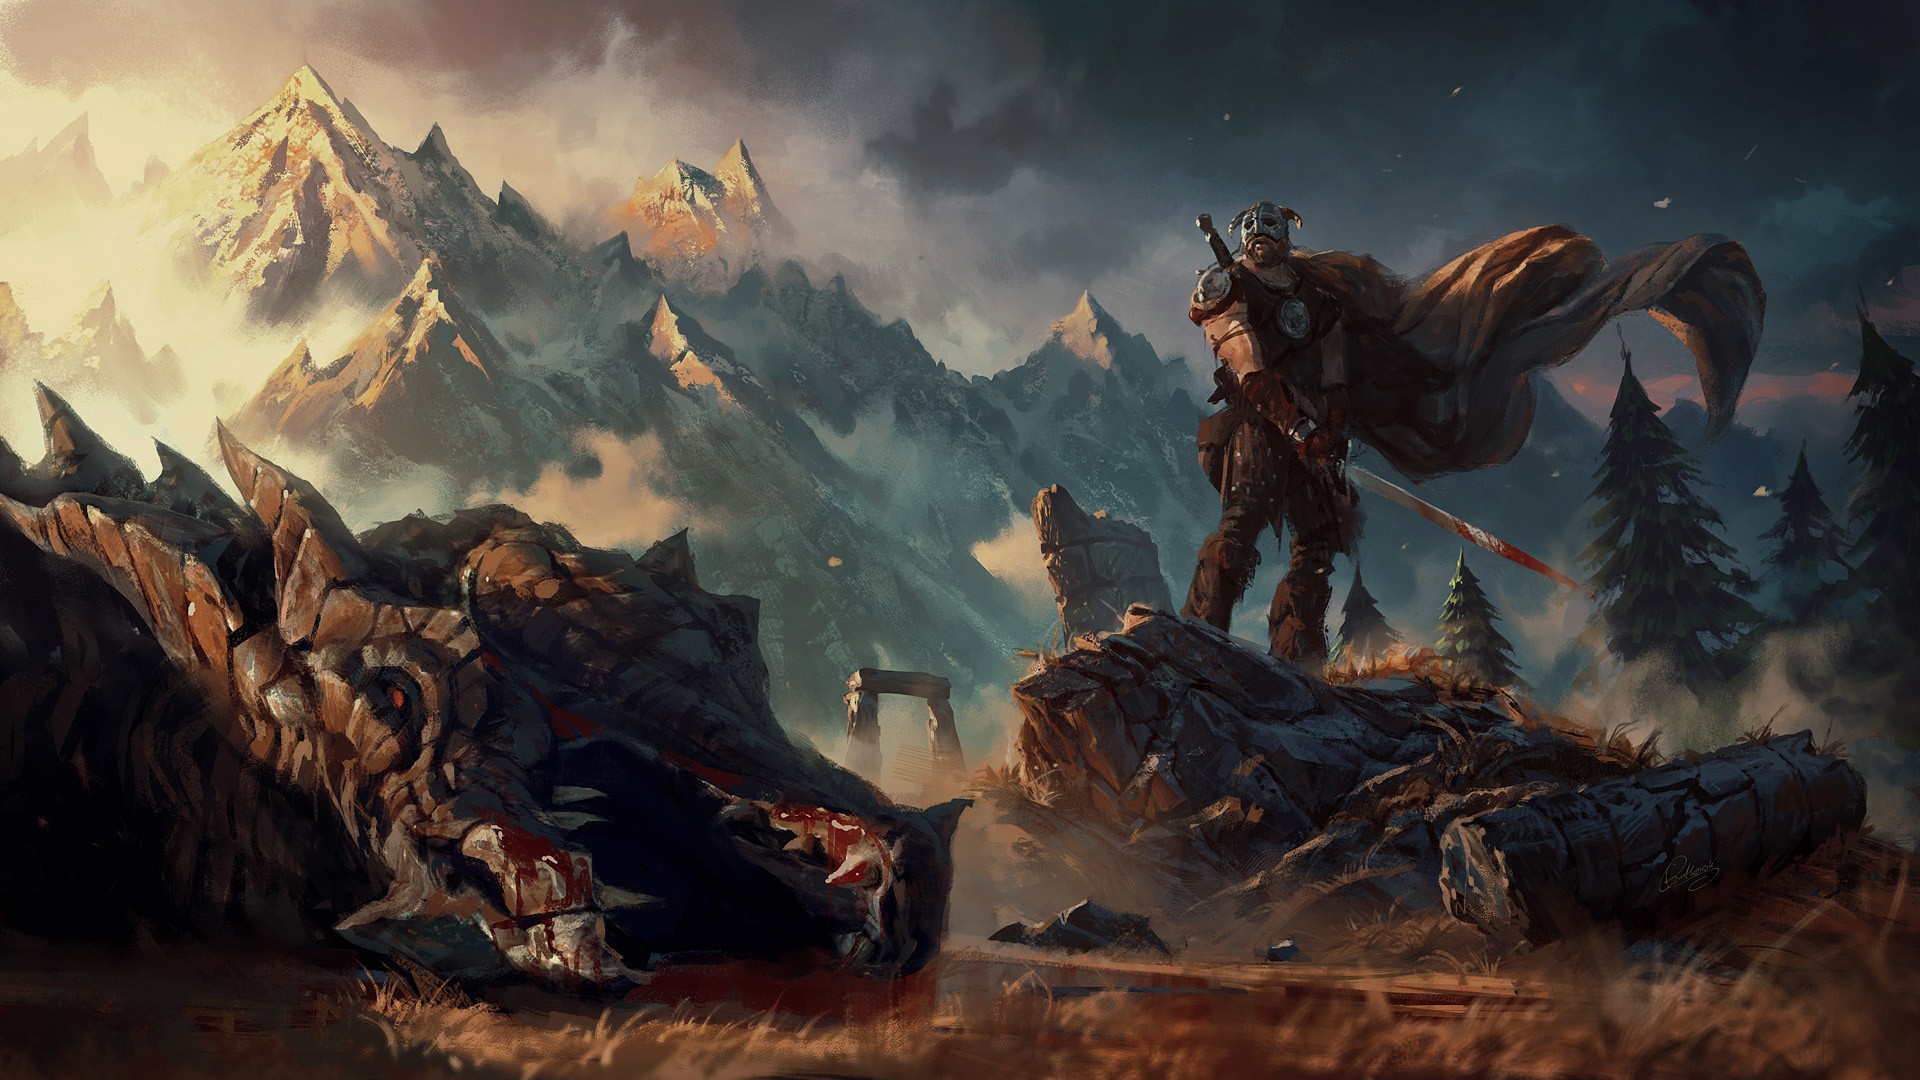 fantasy art, Artwork, Video games, The Elder Scrolls V Skyrim